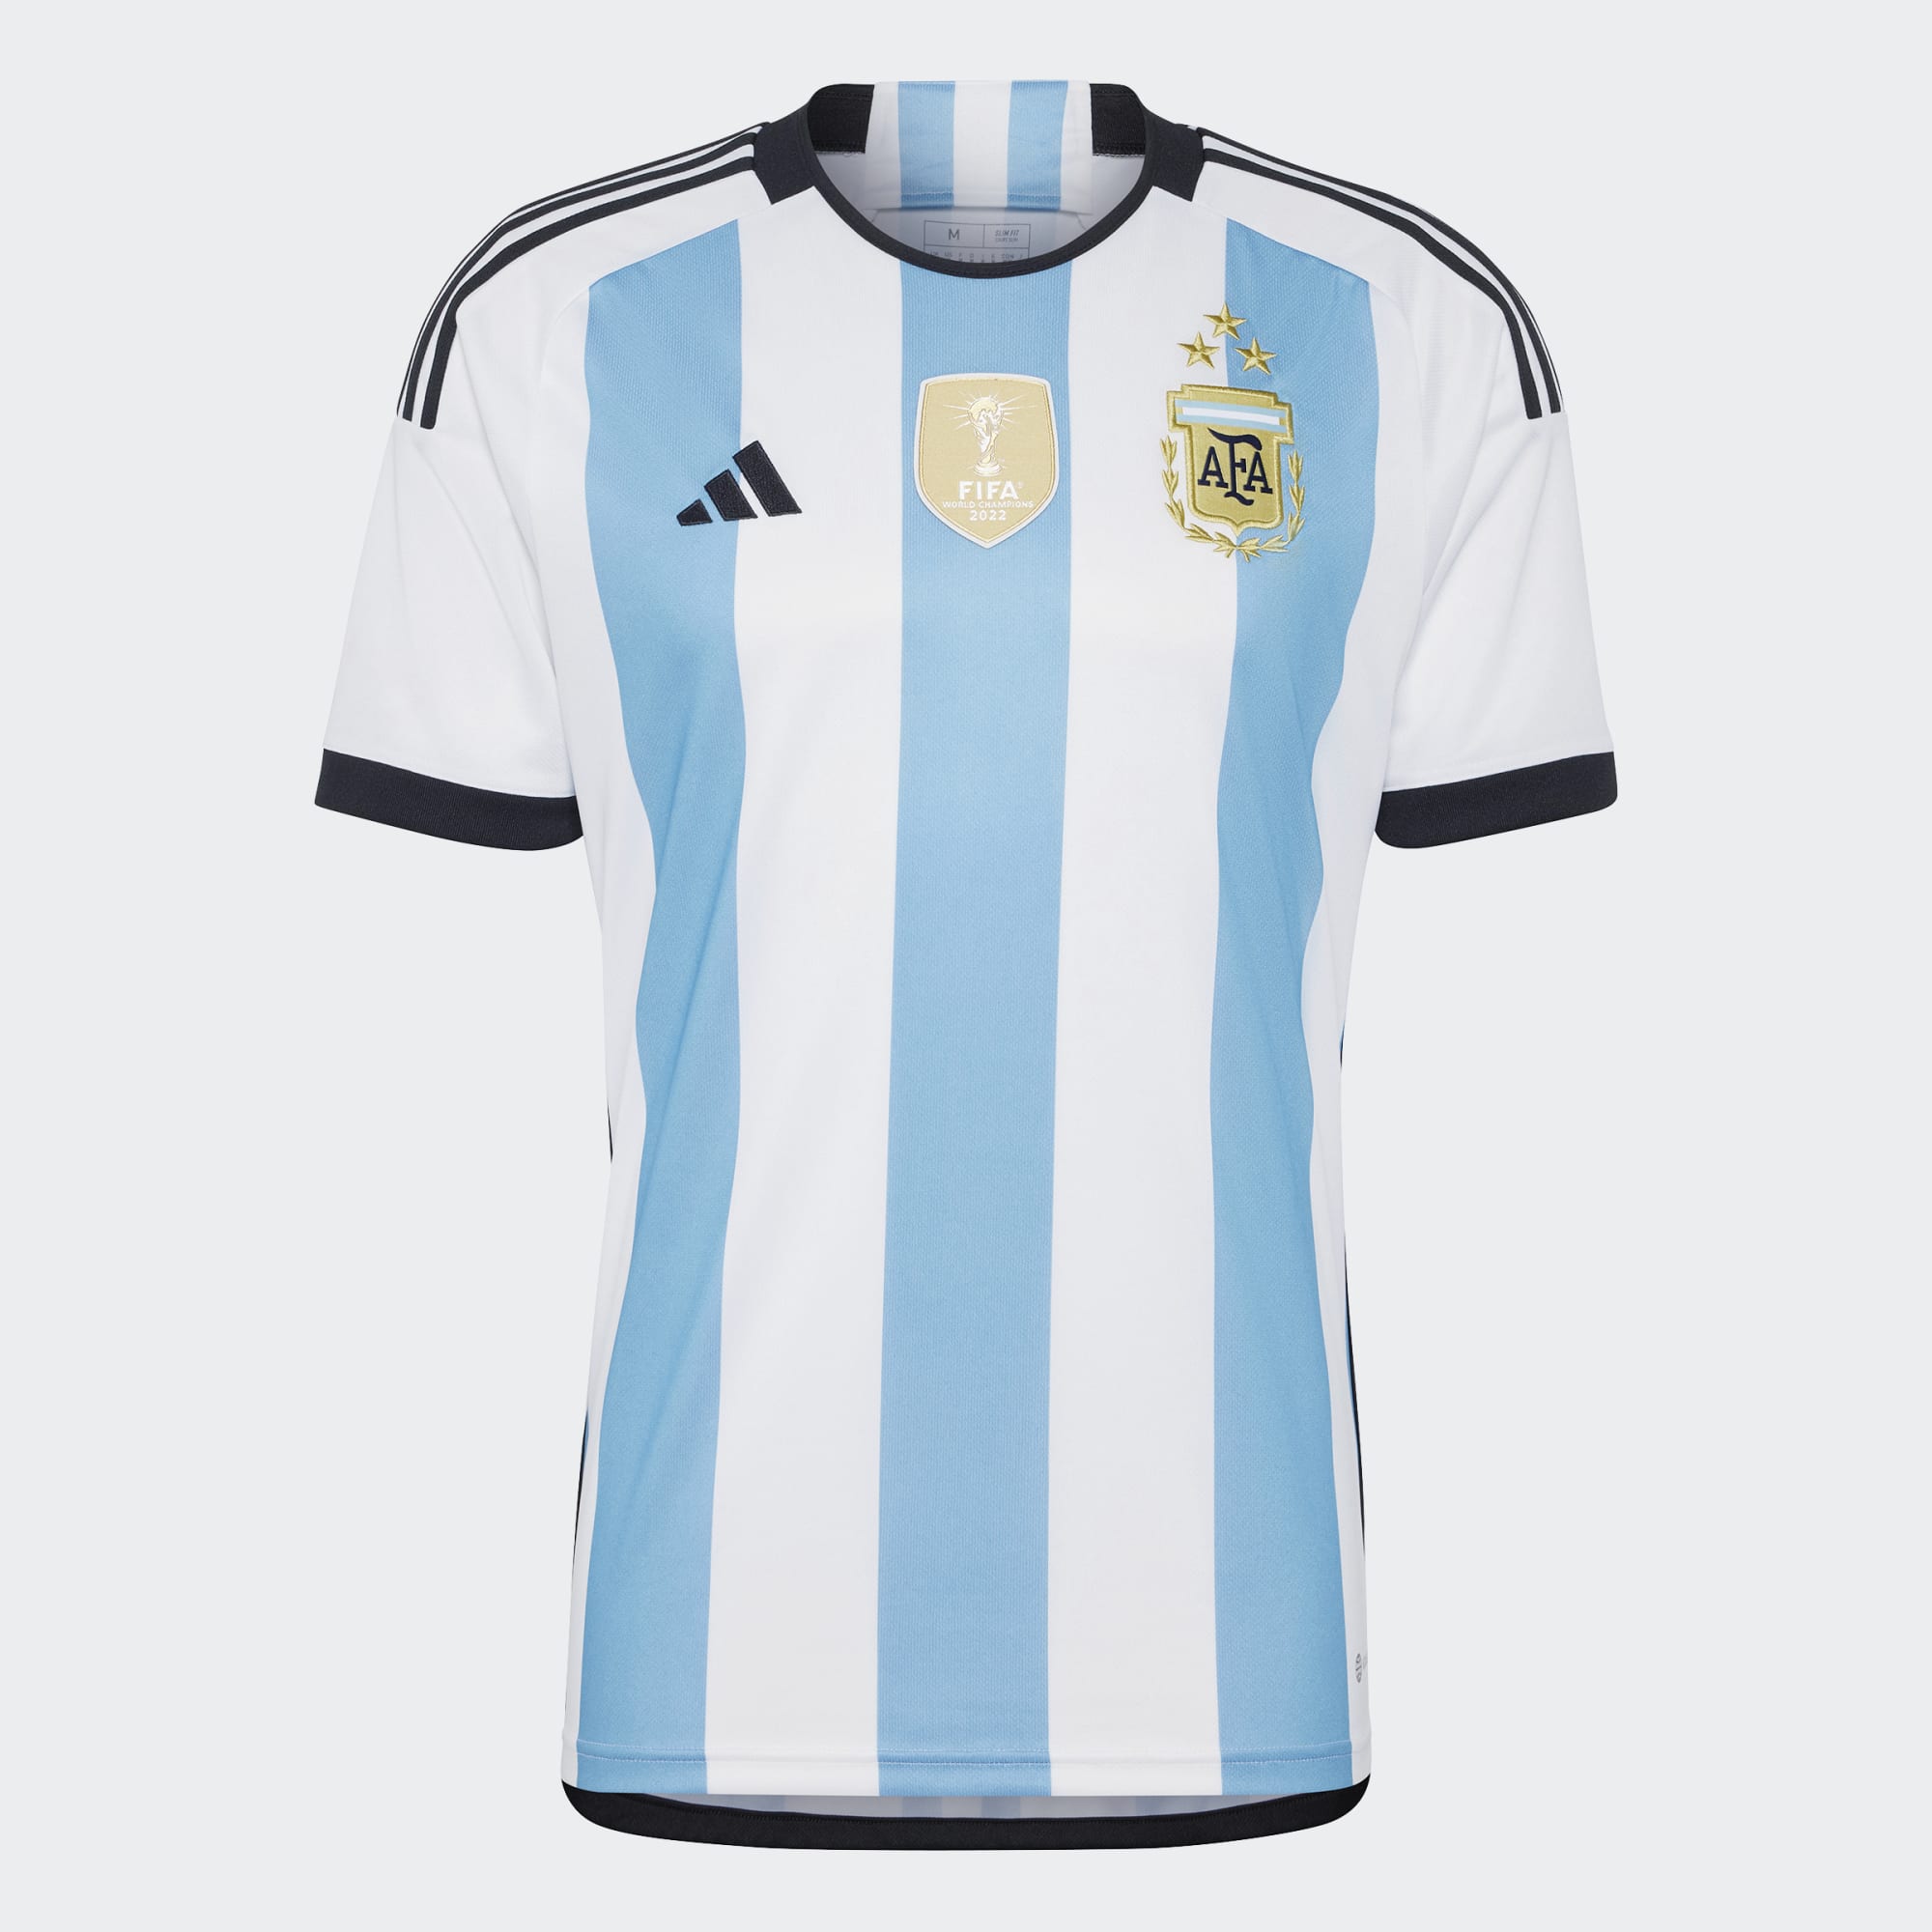 AFA Shop – Oficial de Selección Argentina fútbol